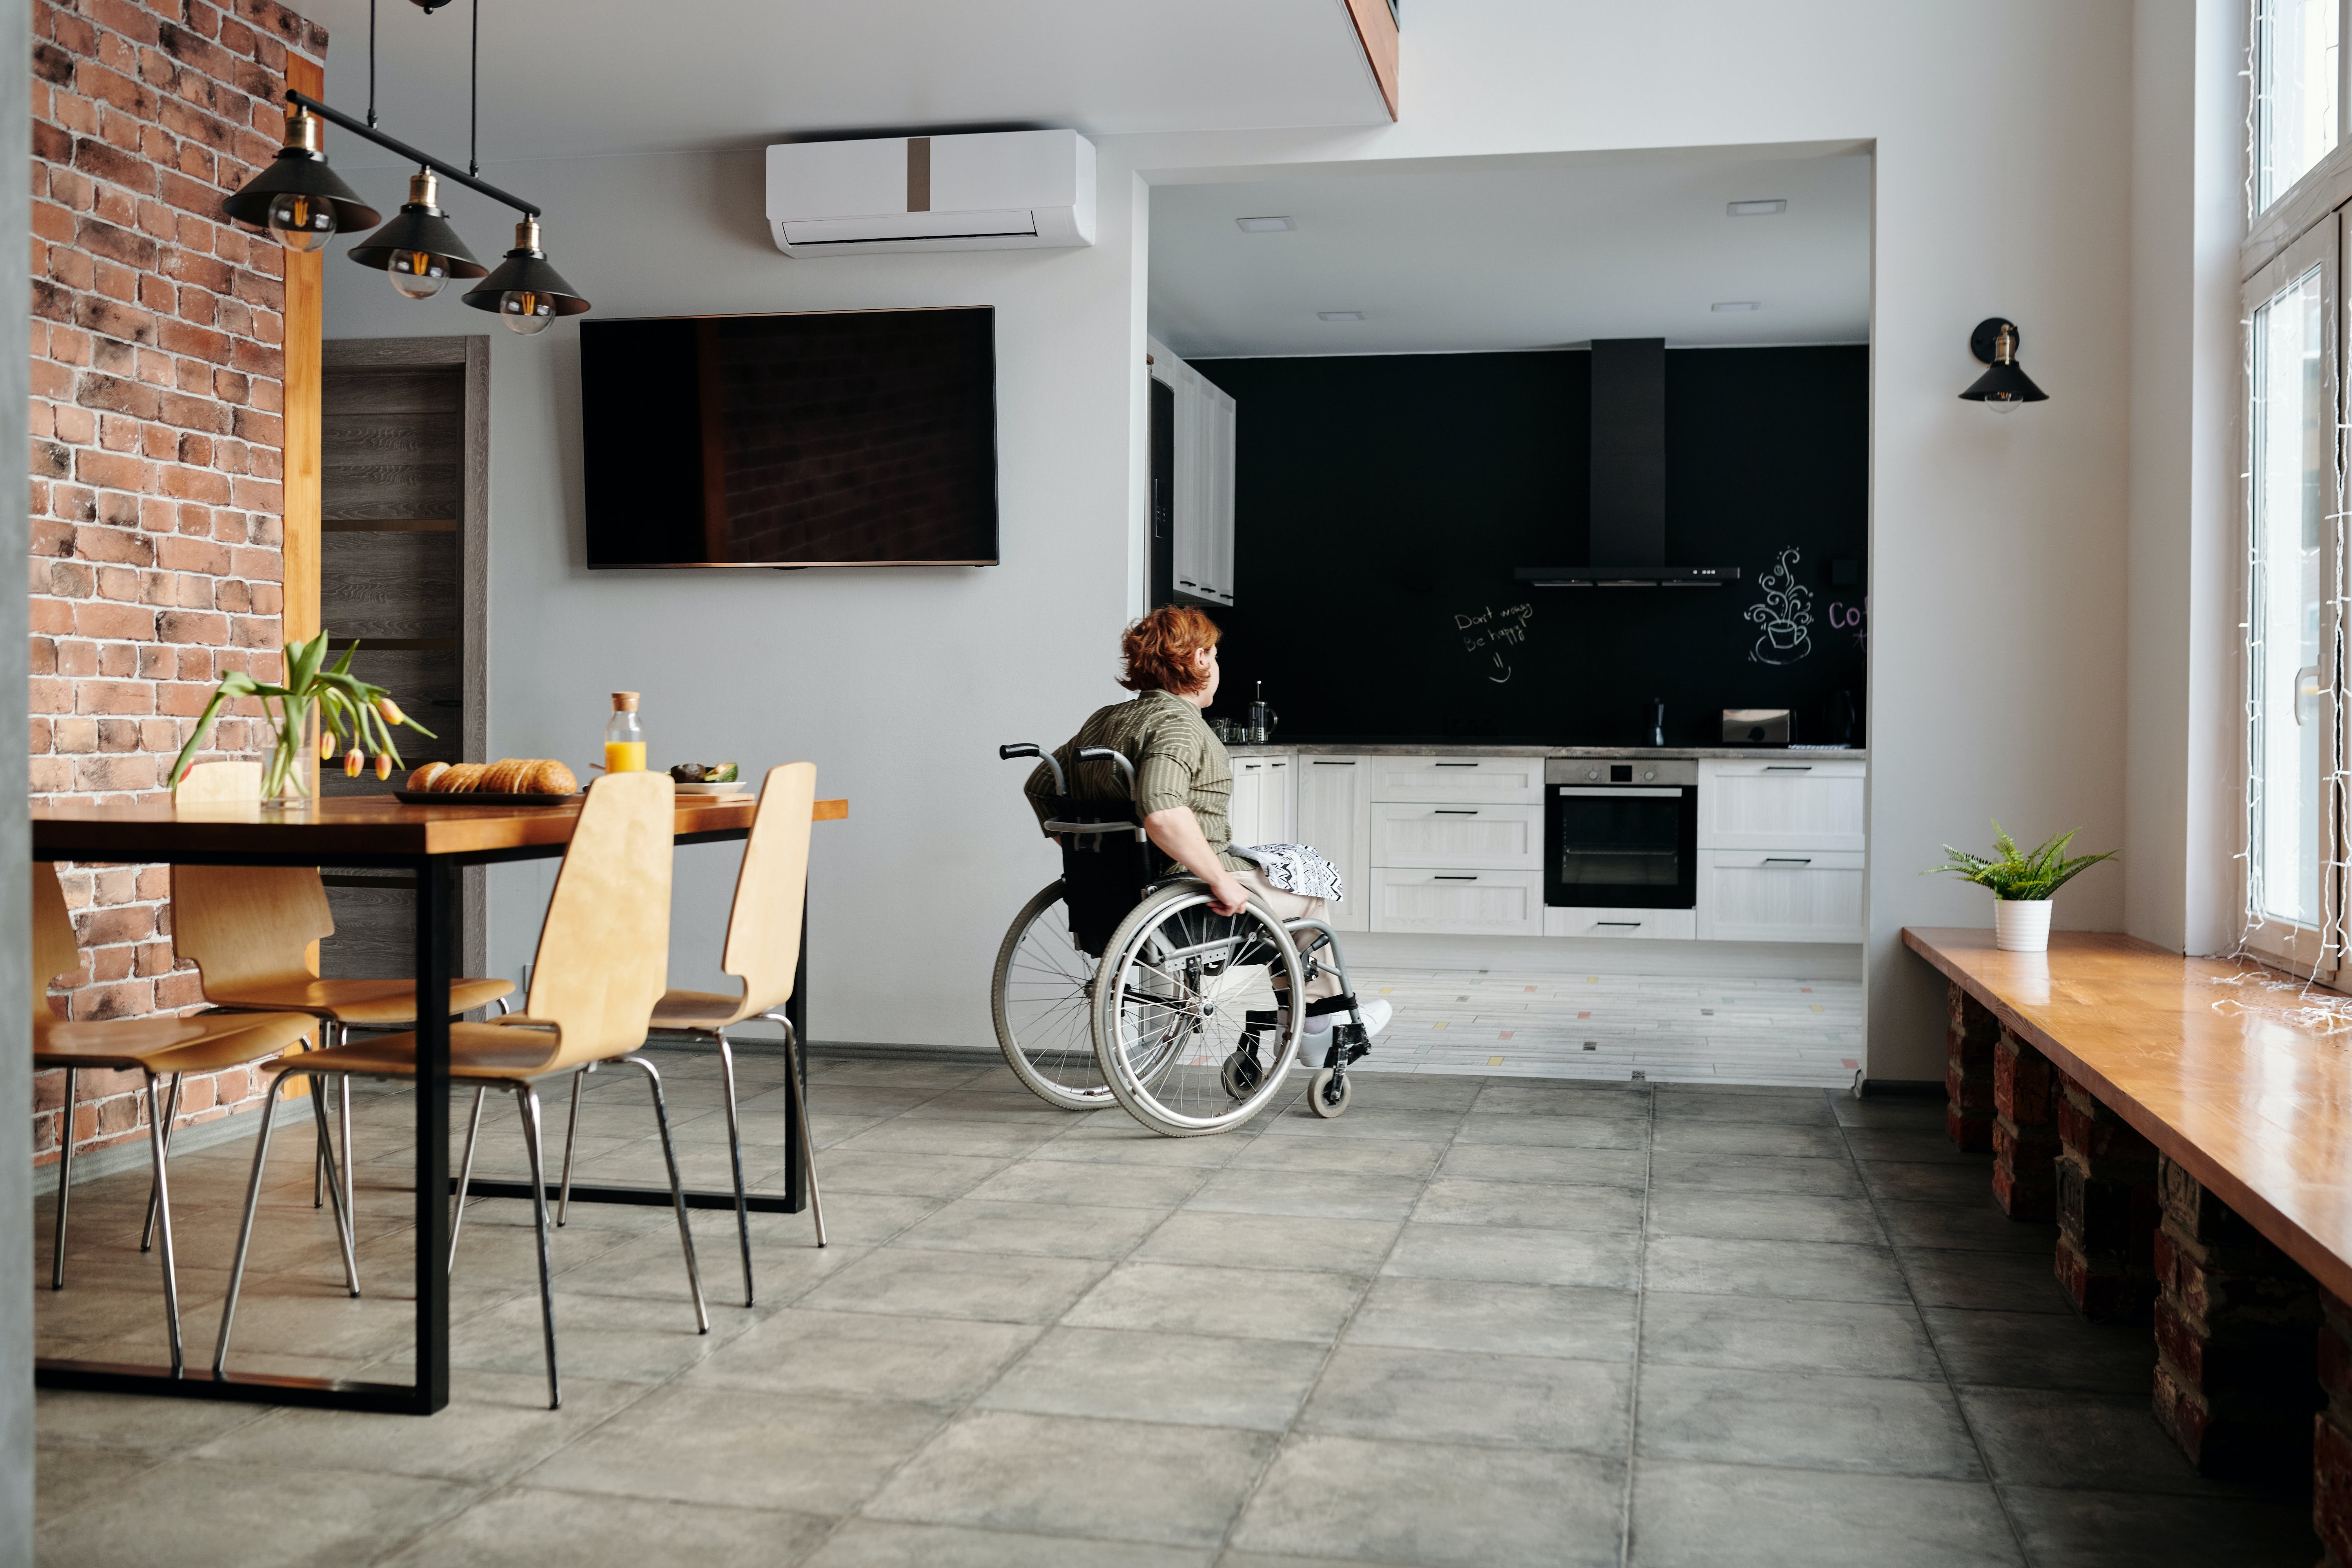 Жилье для инвалидов 1 группы. Квартира для инвалида. Кухня для колясочника. Квартира для инвалида колясочника. Кухня для инвалида колясочника.